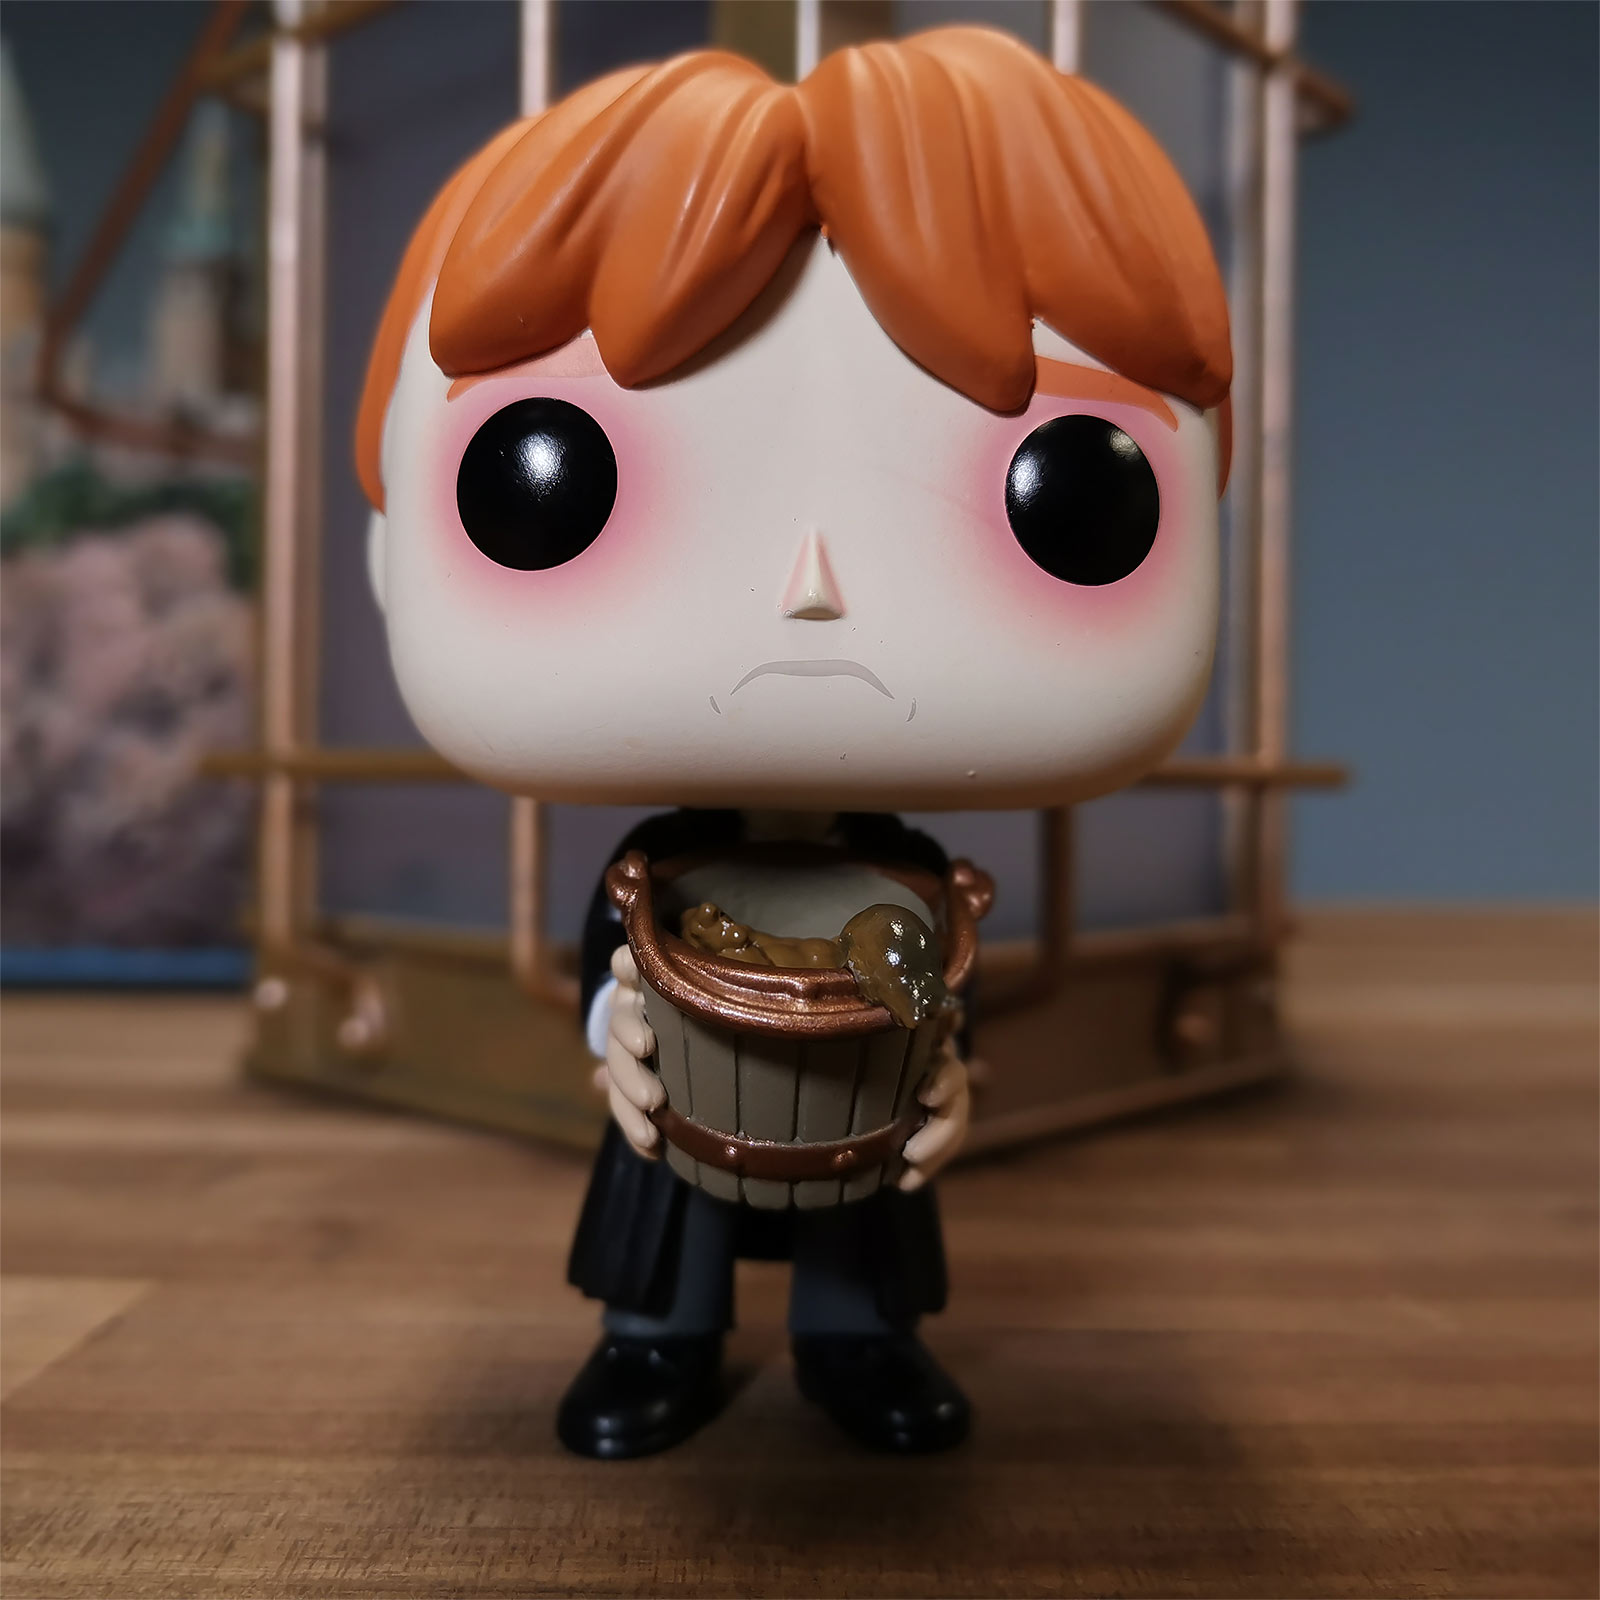 Harry Potter - Ron mit Schnecken Funko Pop Figur